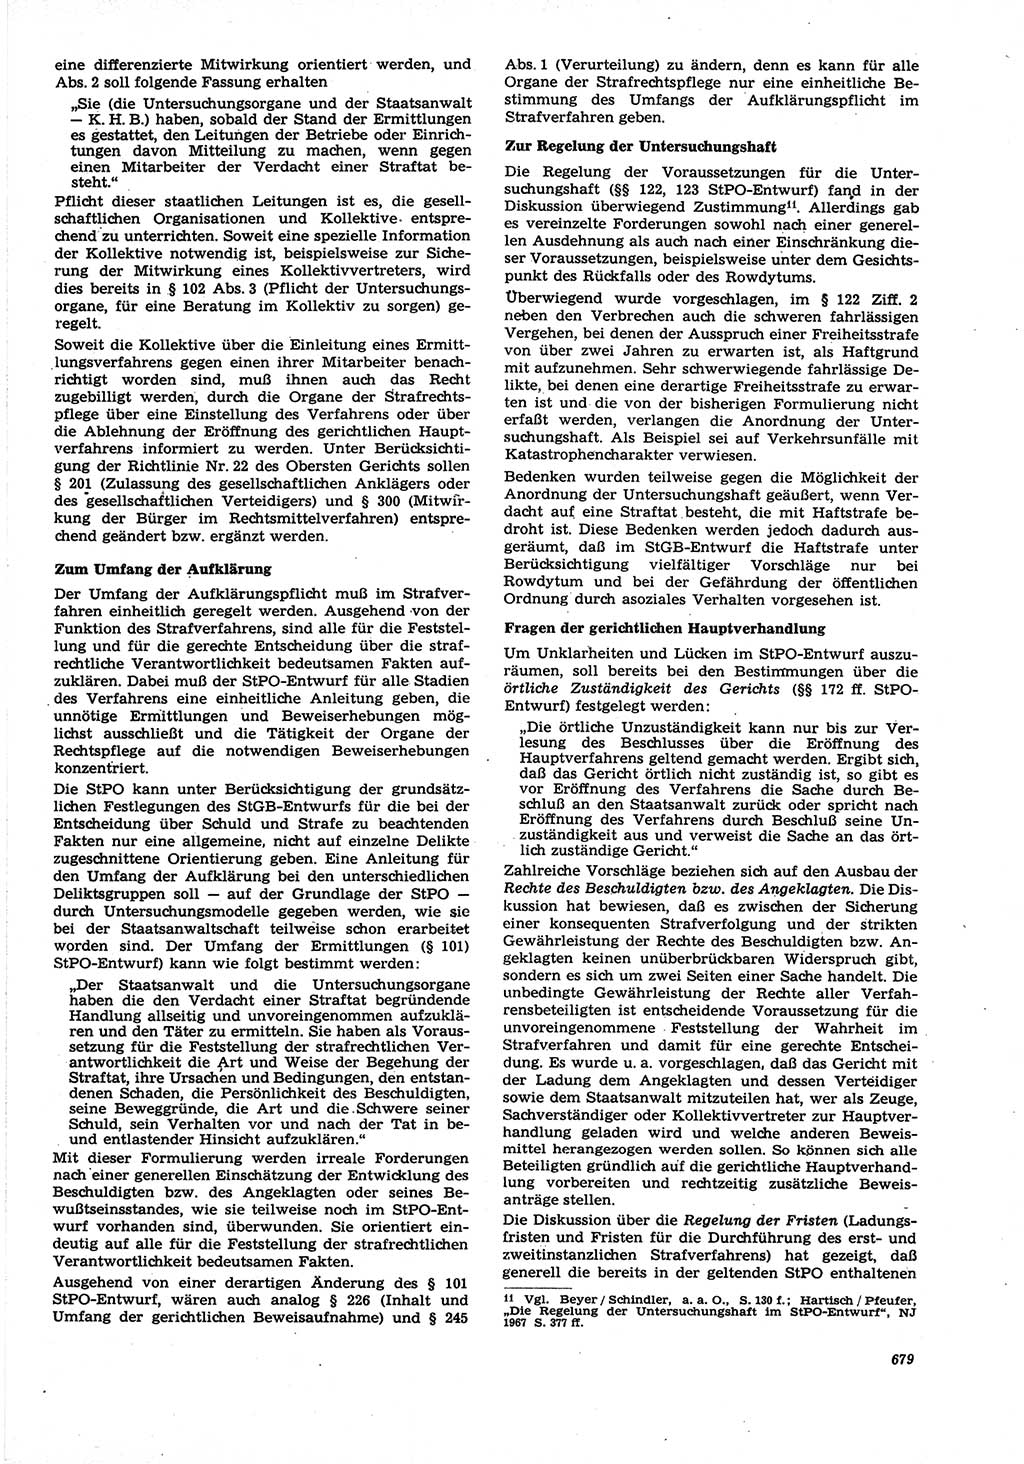 Neue Justiz (NJ), Zeitschrift für Recht und Rechtswissenschaft [Deutsche Demokratische Republik (DDR)], 21. Jahrgang 1967, Seite 679 (NJ DDR 1967, S. 679)